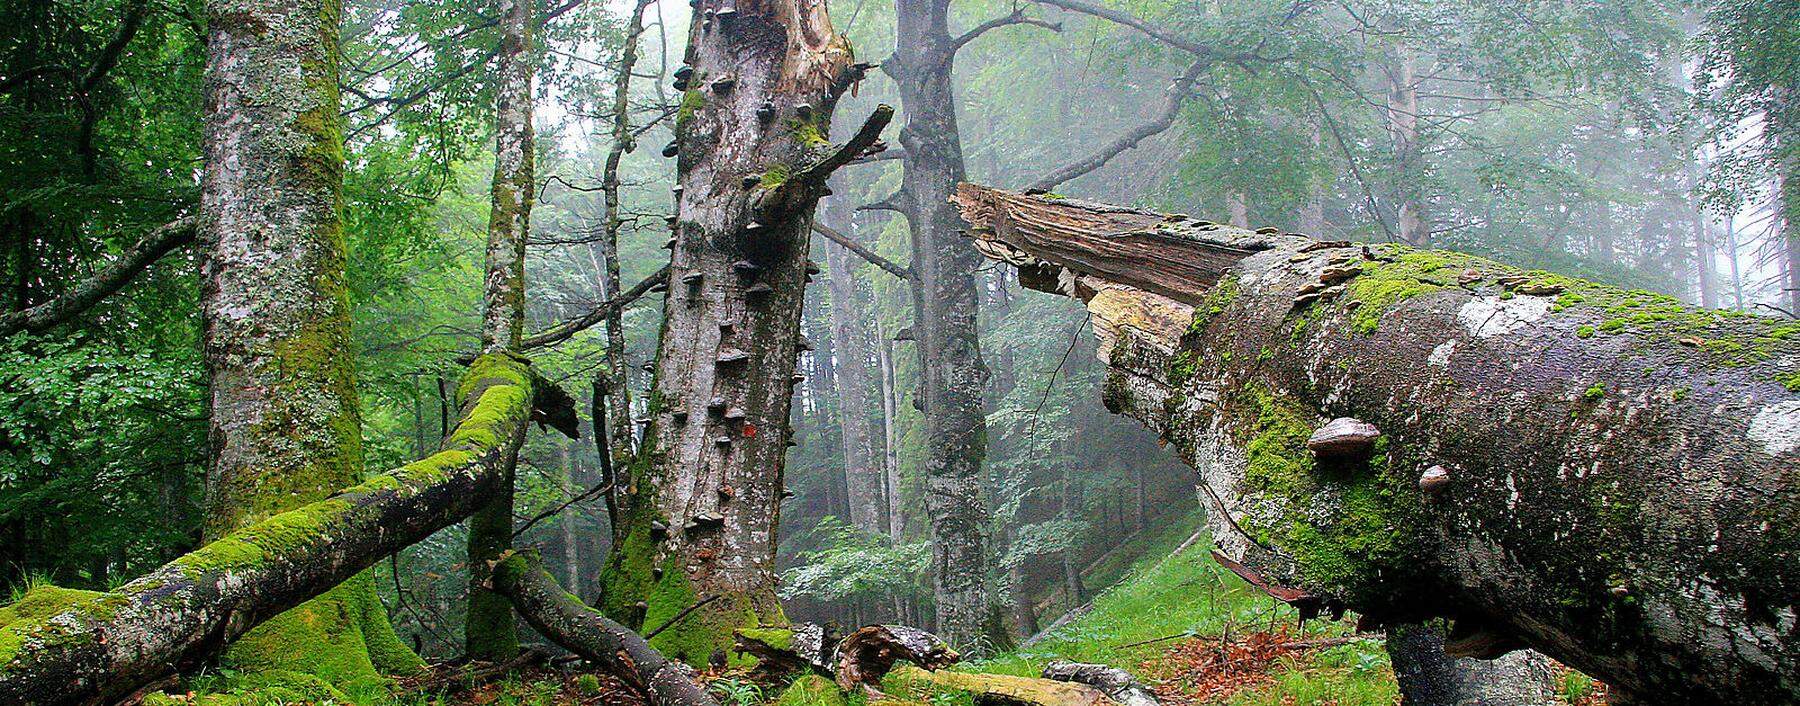 Urtümlicher Nationalpark Kalkalpen: Das Holz bleibt liegen und wird neu besiedelt.